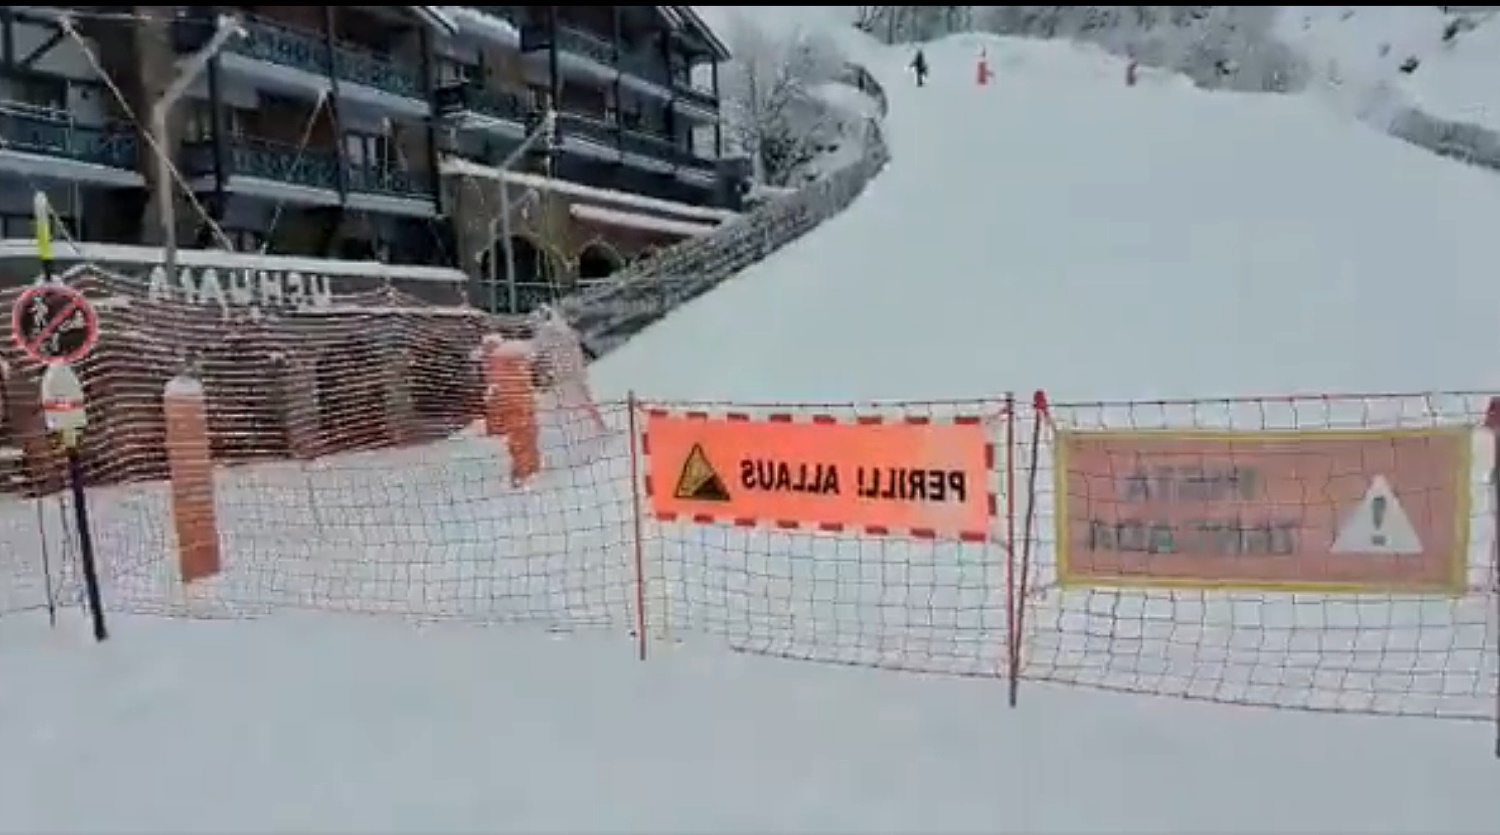 Vallnord cierra los circuitos de "skimo" de Arinsal por riesgo de aludes y algunos esquiadores hacen caso omiso